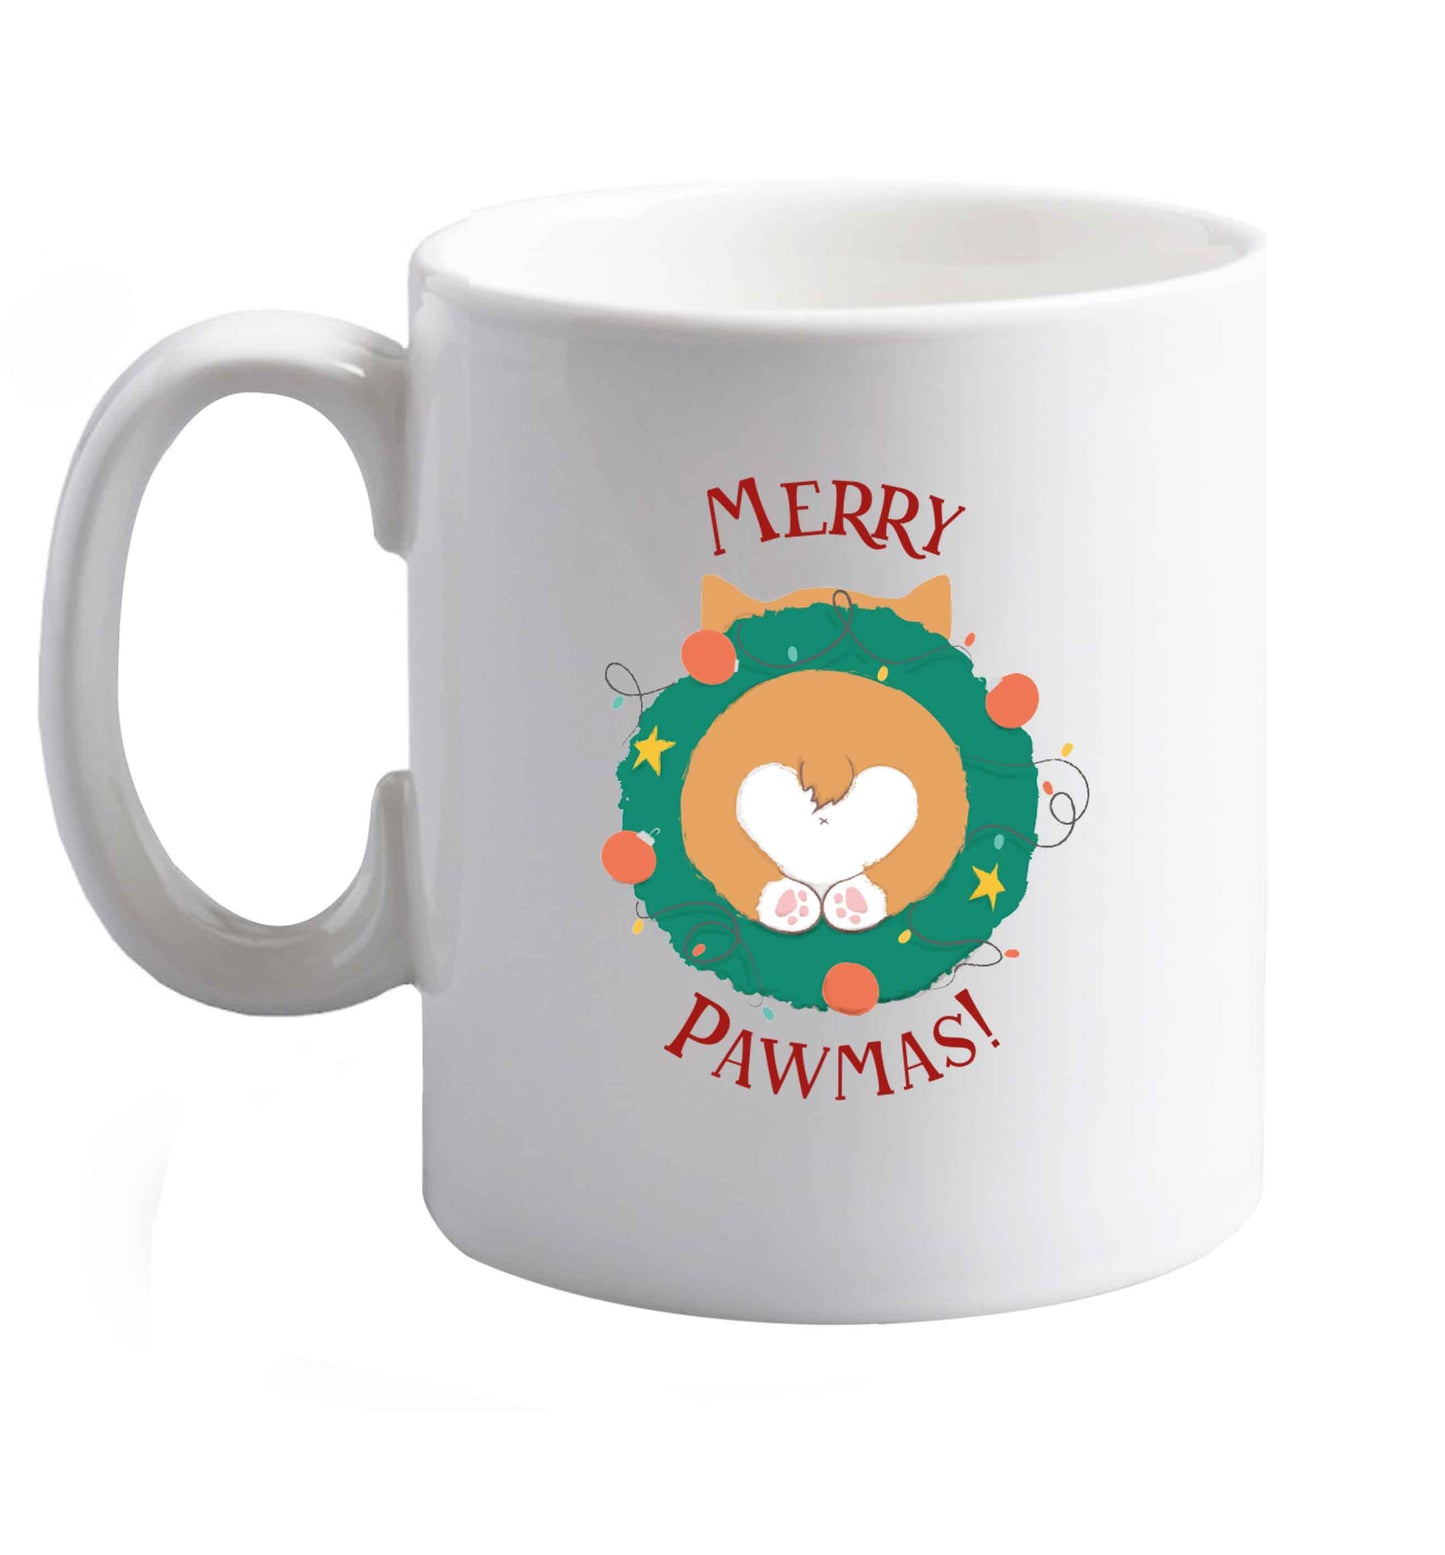 10 oz Merry Pawmas ceramic mug right handed